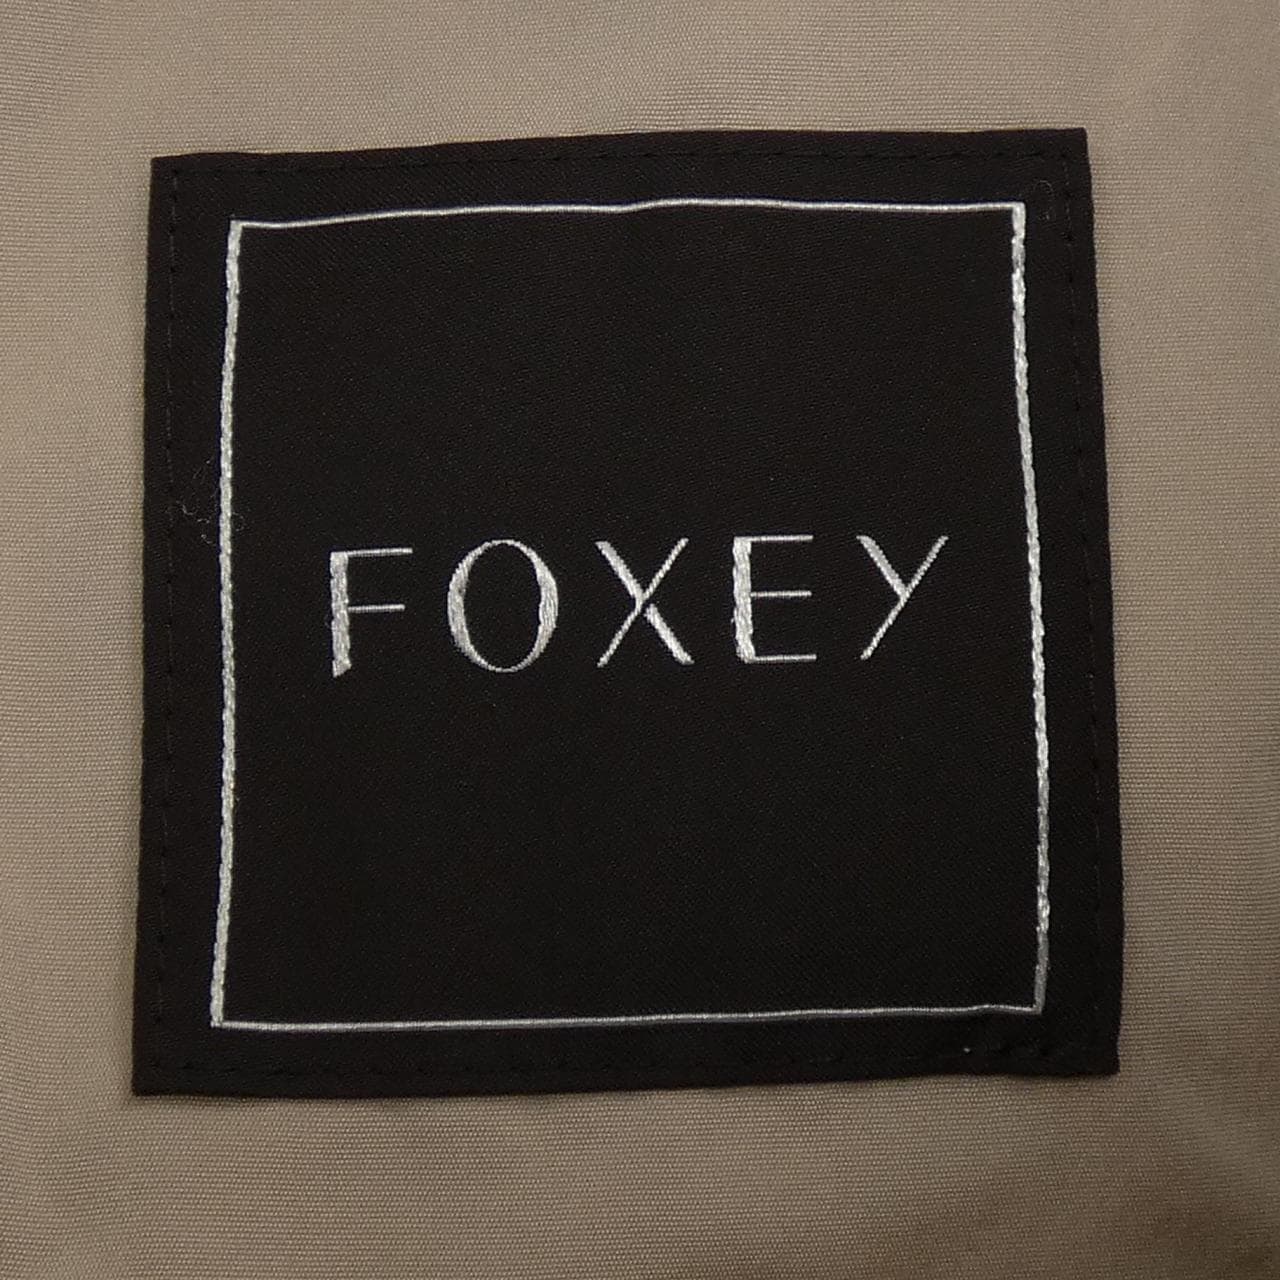 Foxy FOXEY coat